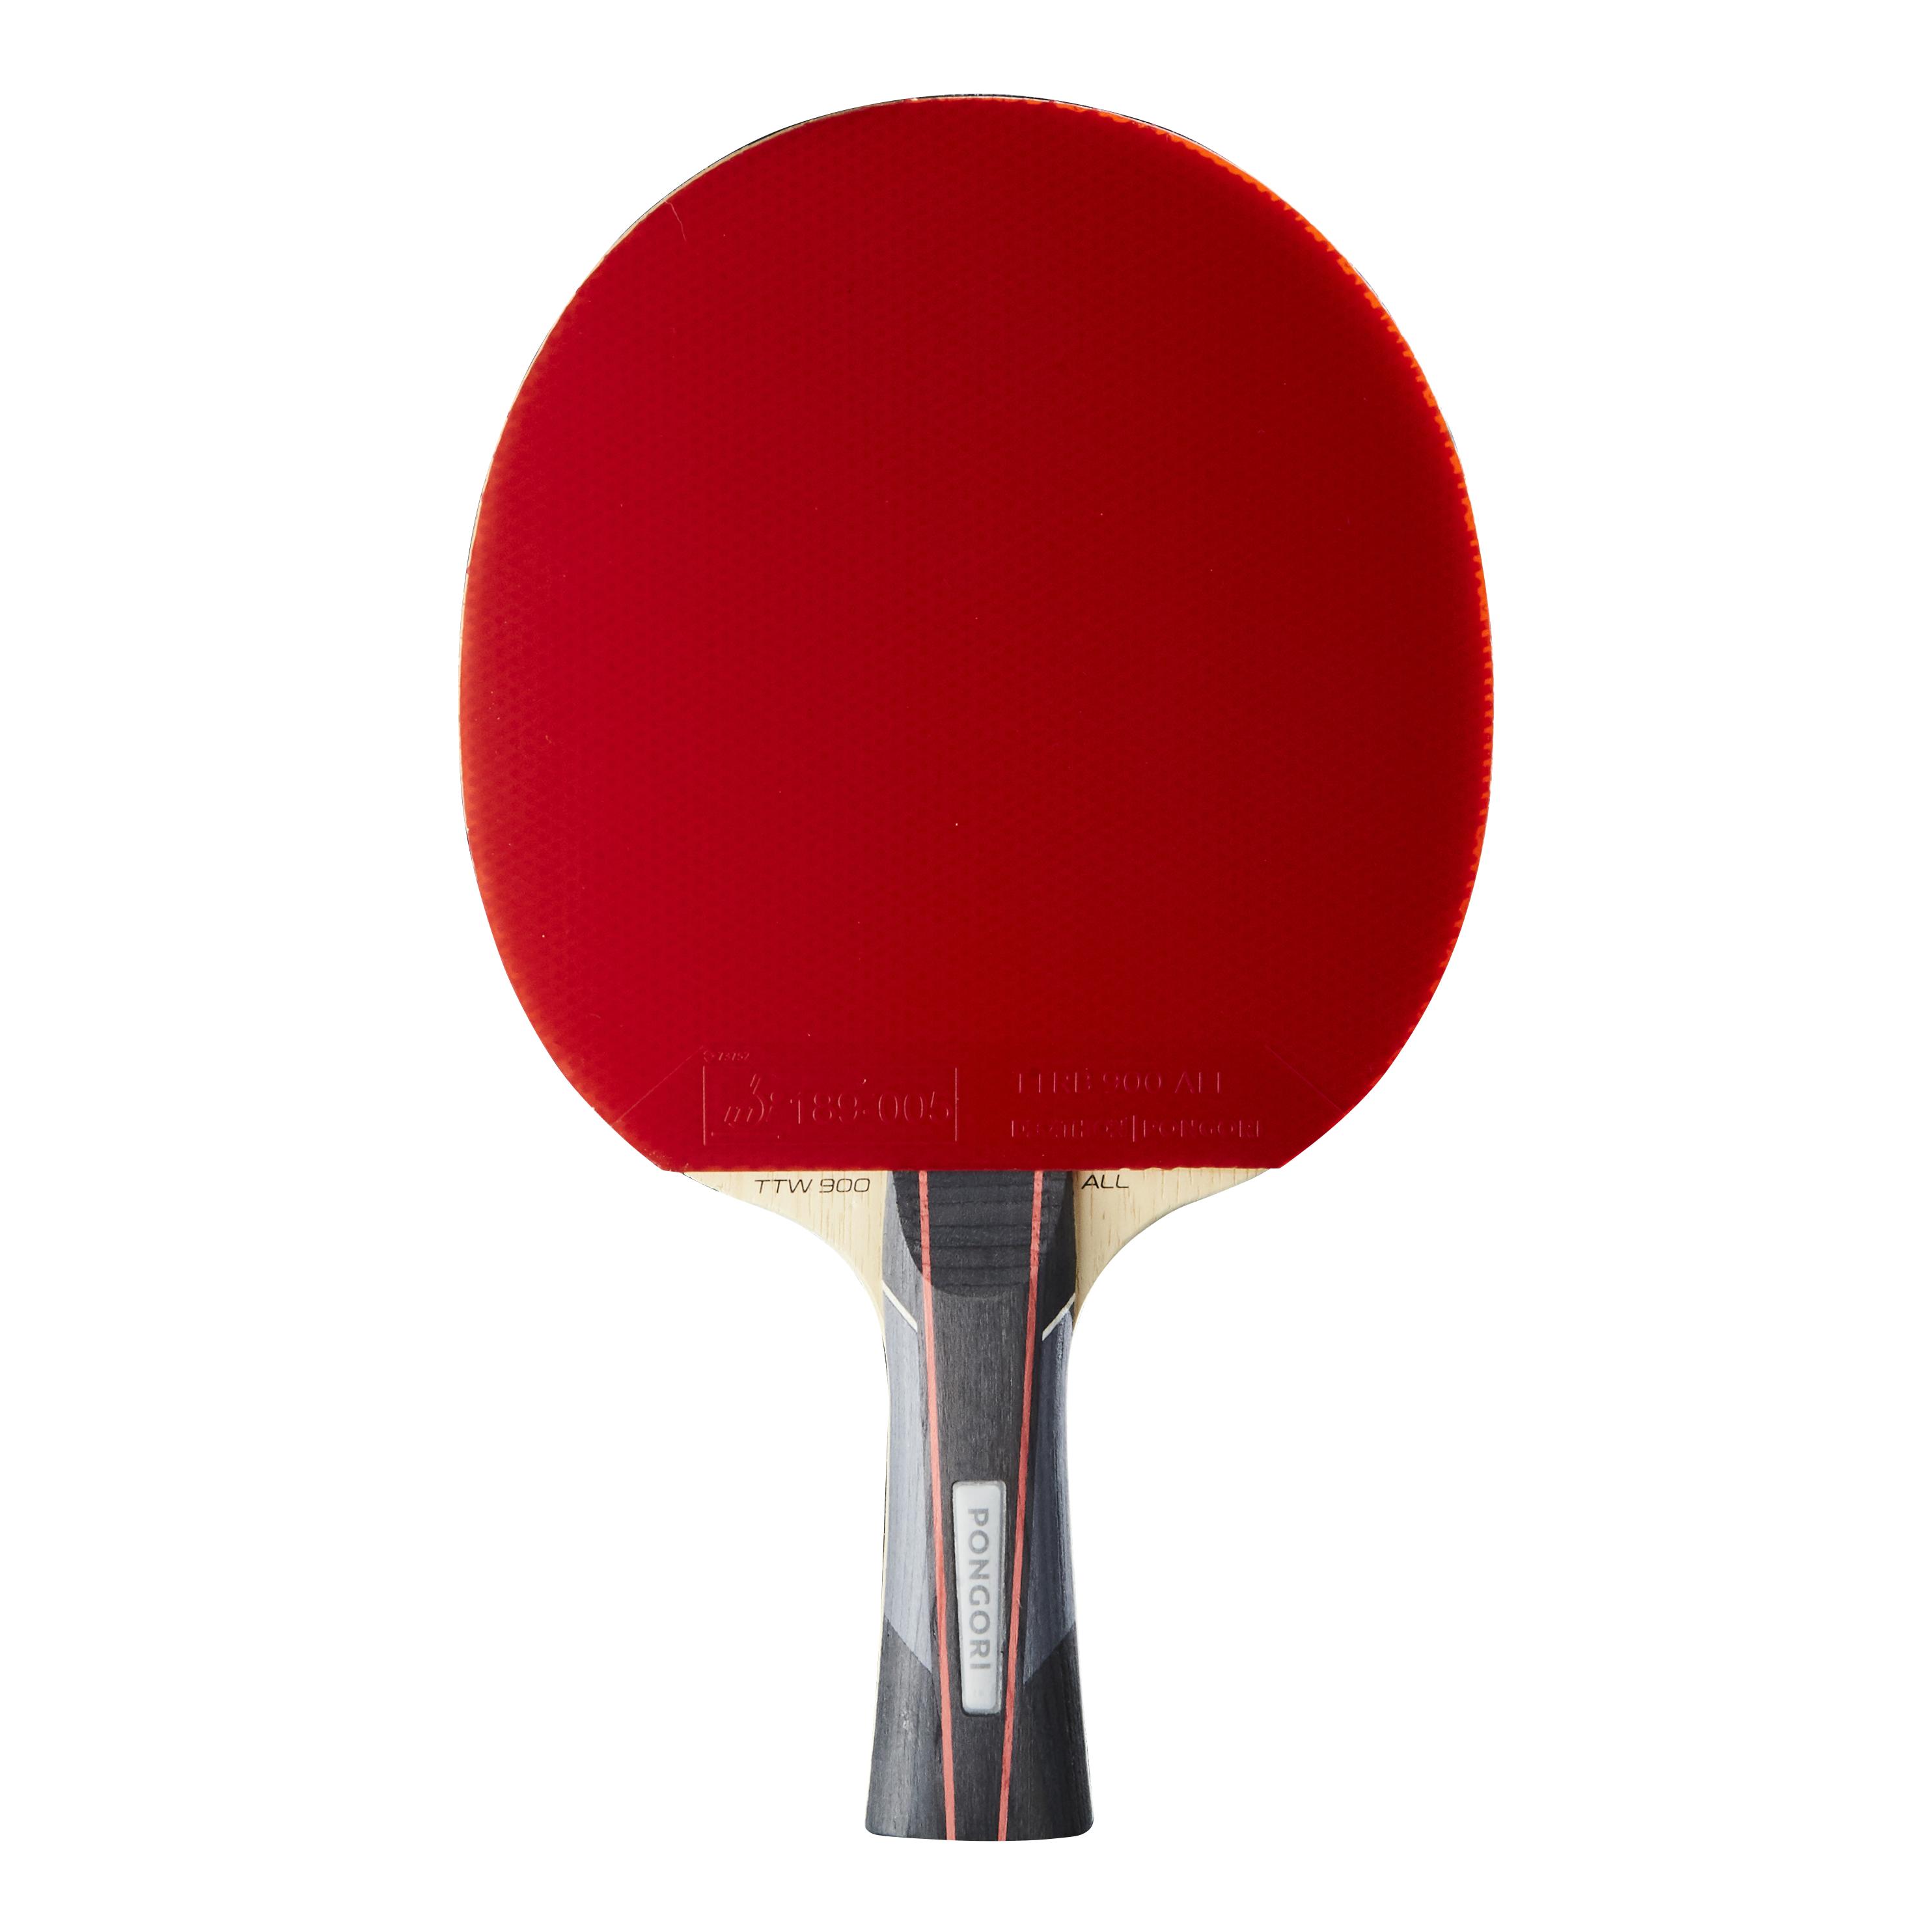 [ส่งฟรี ]ไม้ปิงปองสำหรับการเล่นในสโมสรรุ่น TTR 900 All Club Table Tennis Bat TTR 900 All ไม้ปิงปอง โต๊ะปิงปอง เน็ตปิงปอง ลูกปิงปอง ออกกำลังกาย โปรโมชั่นสุดคุ้ม ส่งฟรี